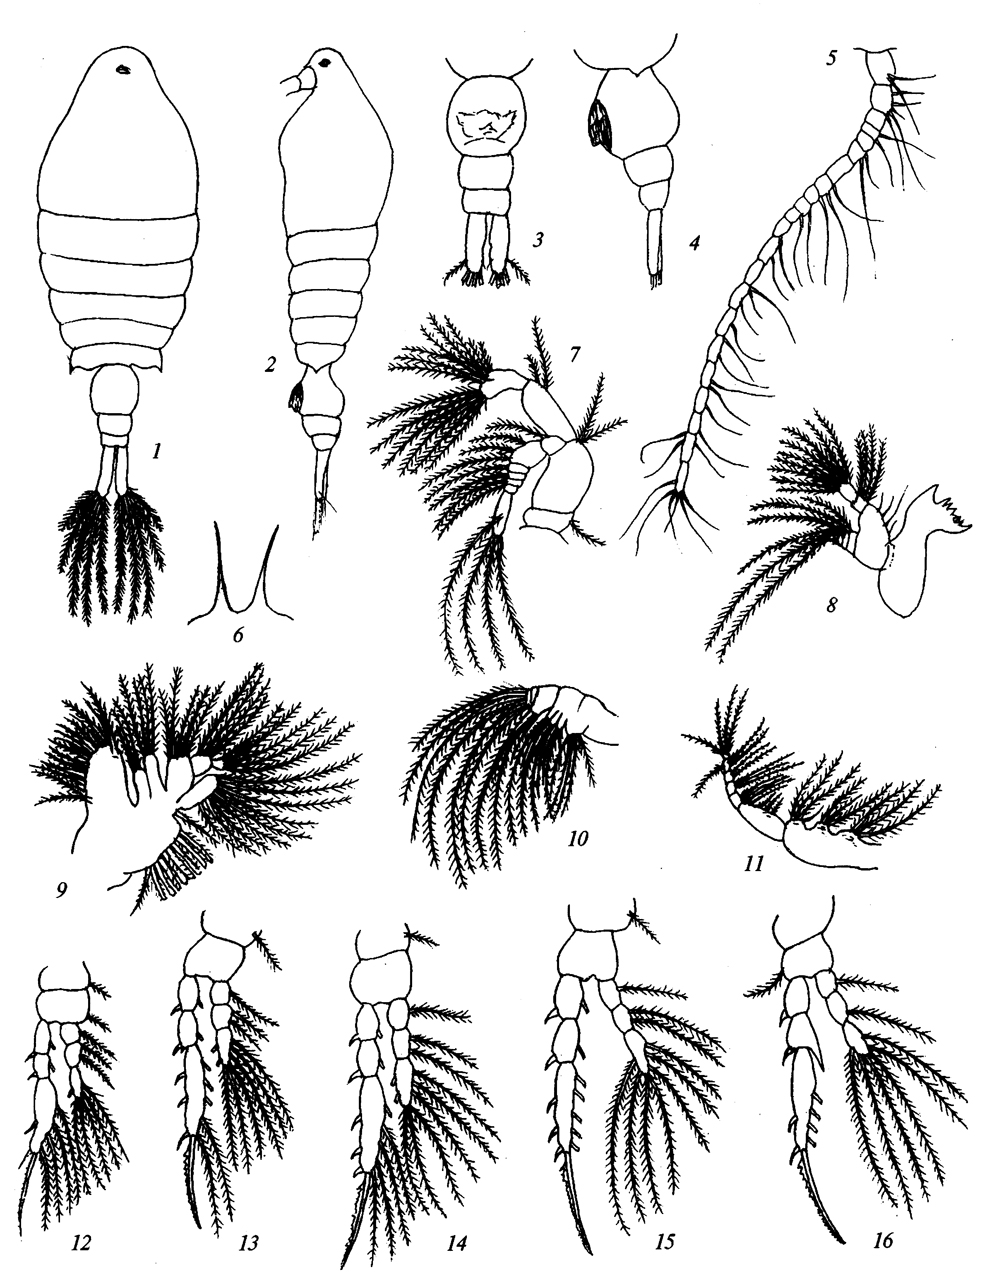 Espèce Centropages spinosus - Planche 1 de figures morphologiques